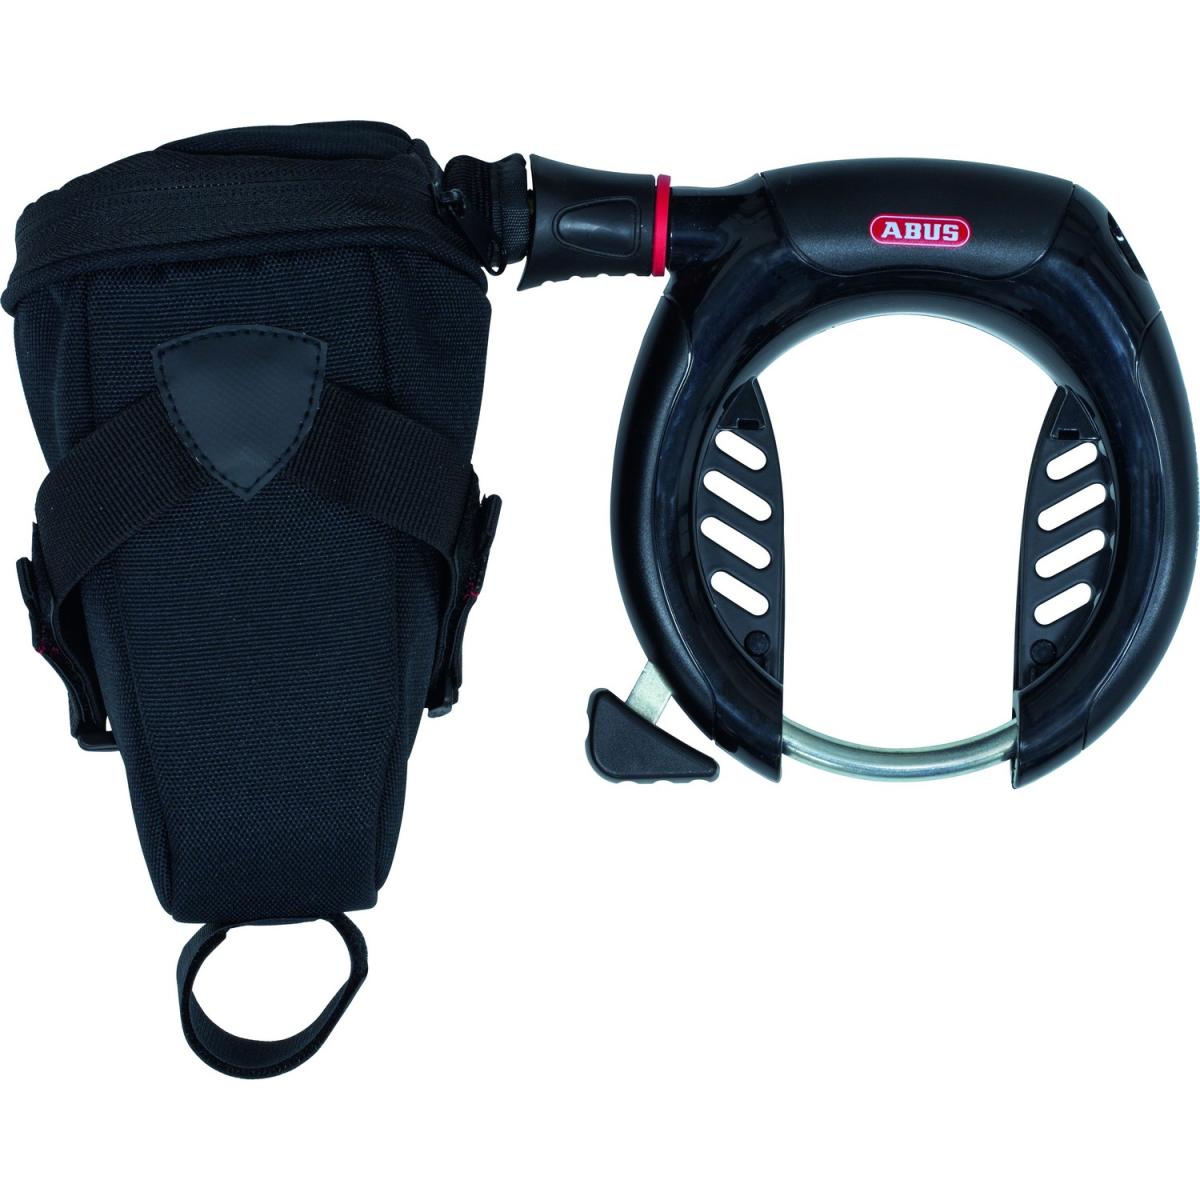 Abus Pro Shield X Plus 5955 patkó kerékpárzár, lánccal, táskával